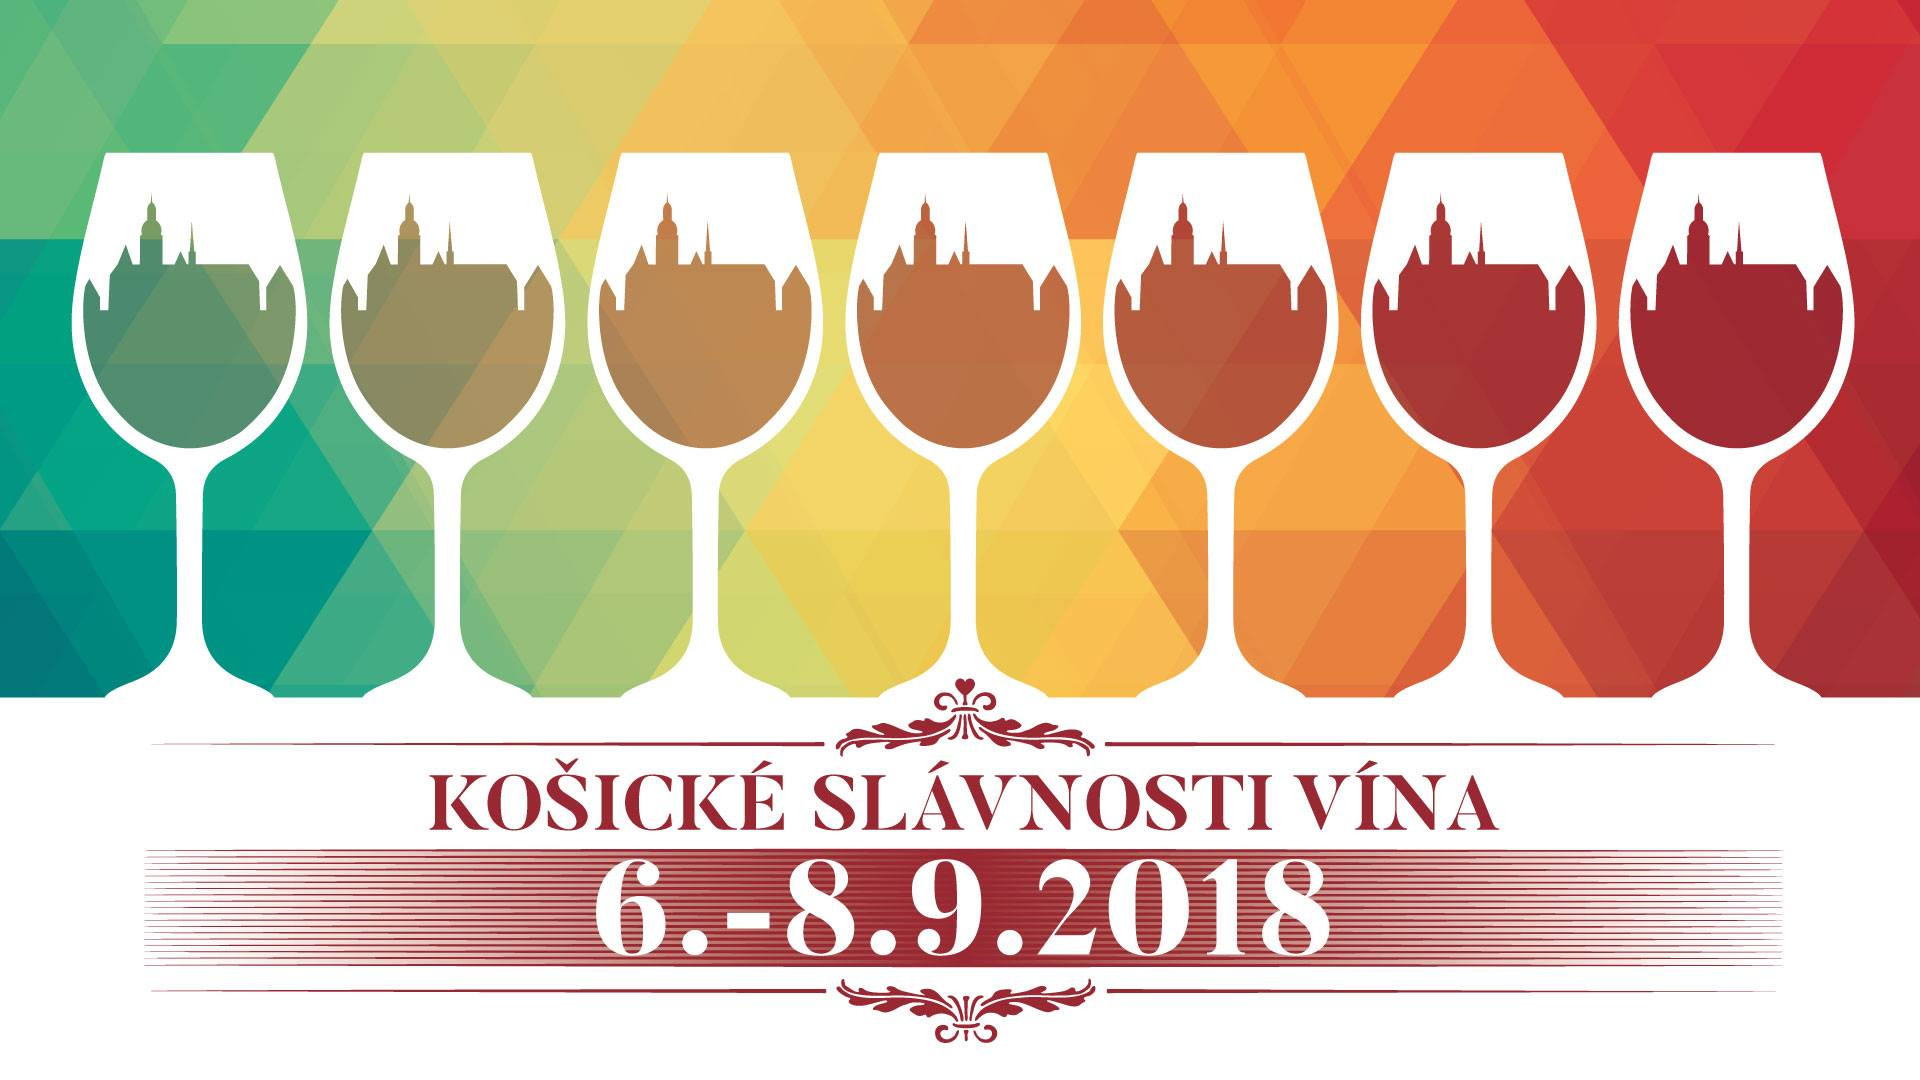 Košické slávnosti vína (6 .- 8.9.2018)